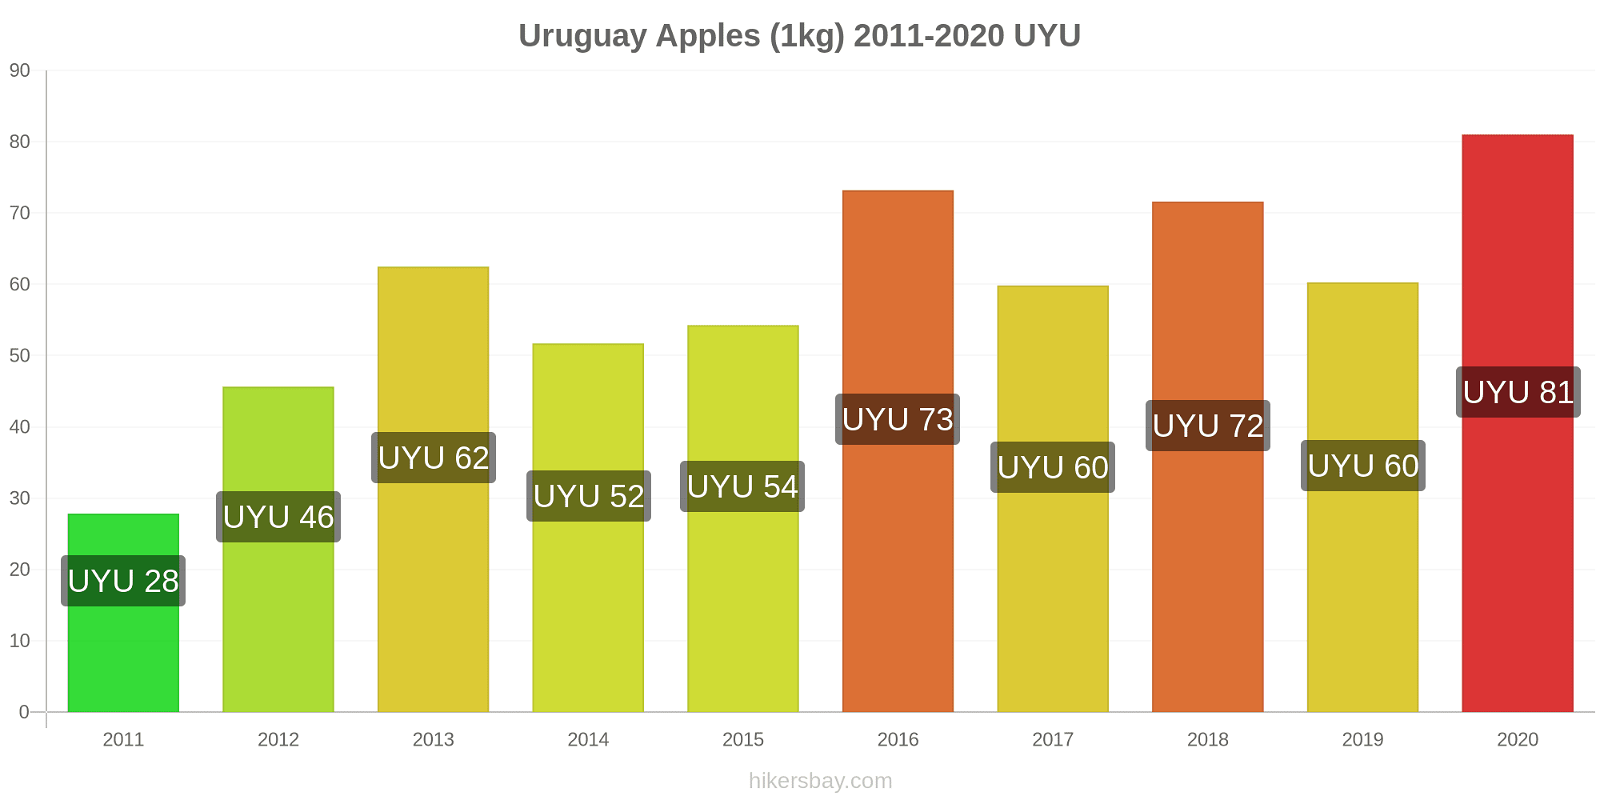 Uruguay price changes Apples (1kg) hikersbay.com